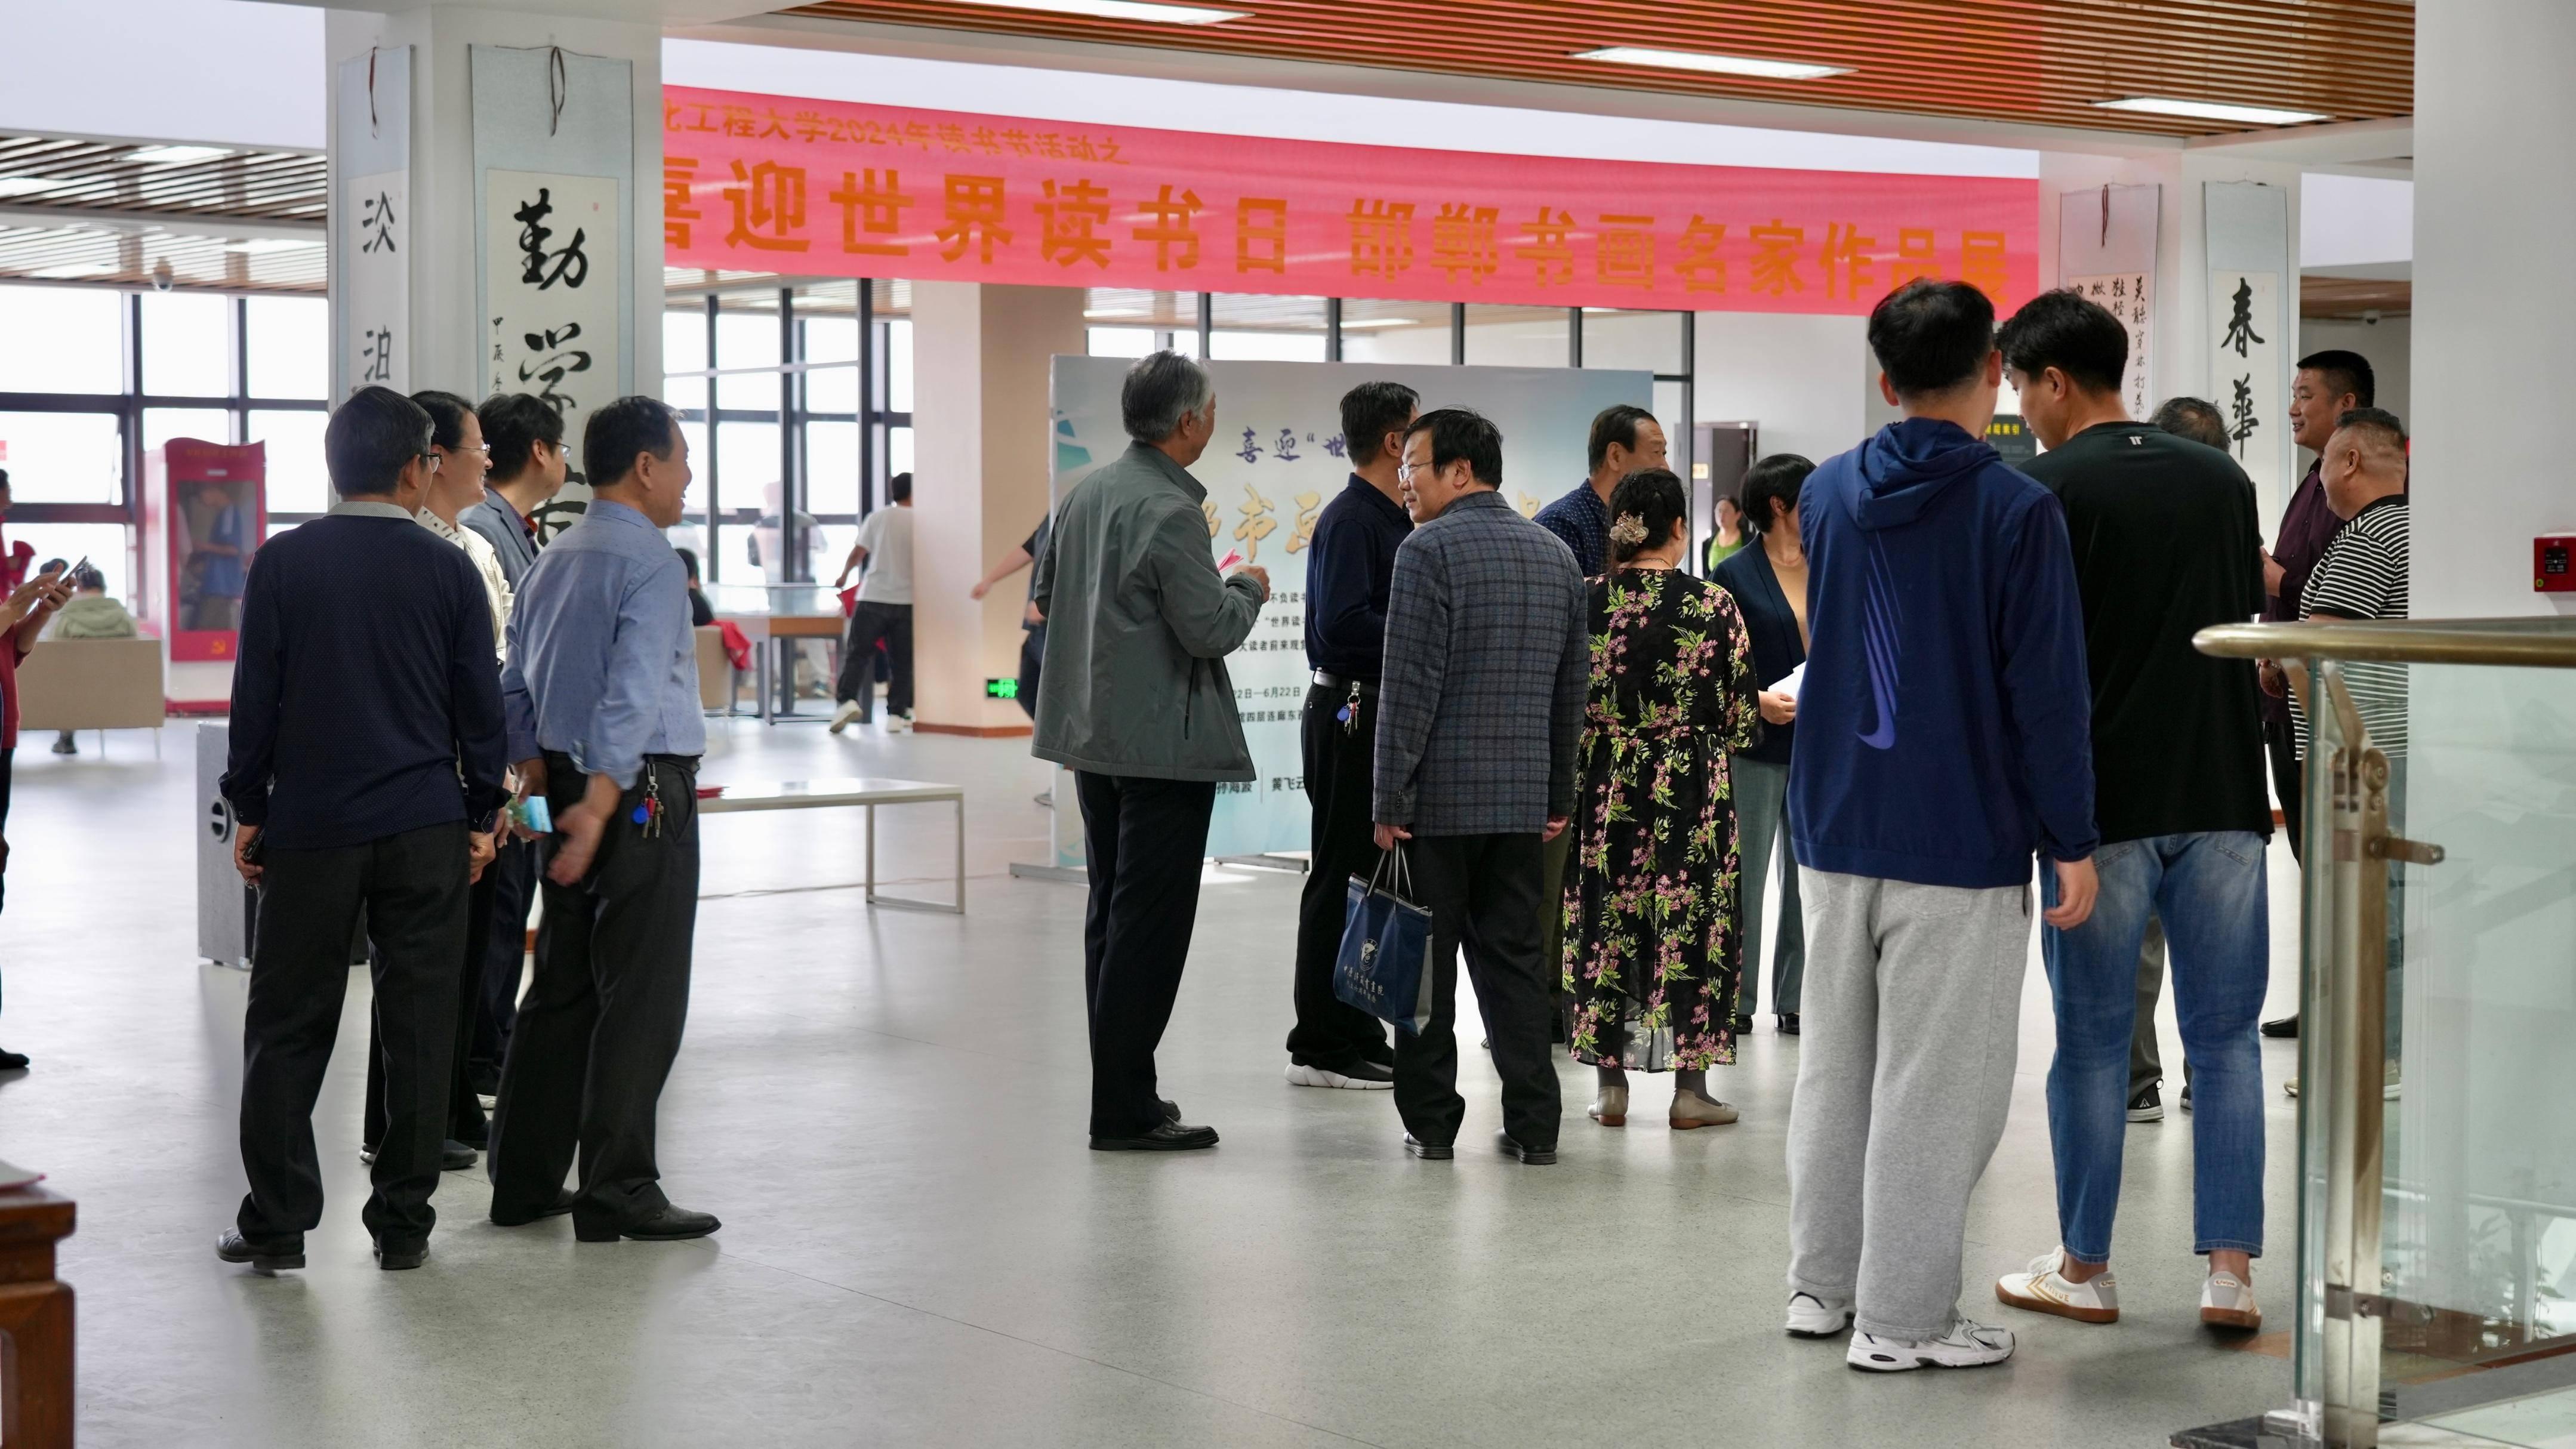 共工新闻:河北工程大学图书馆举办邯郸书画名家作品展开幕仪式